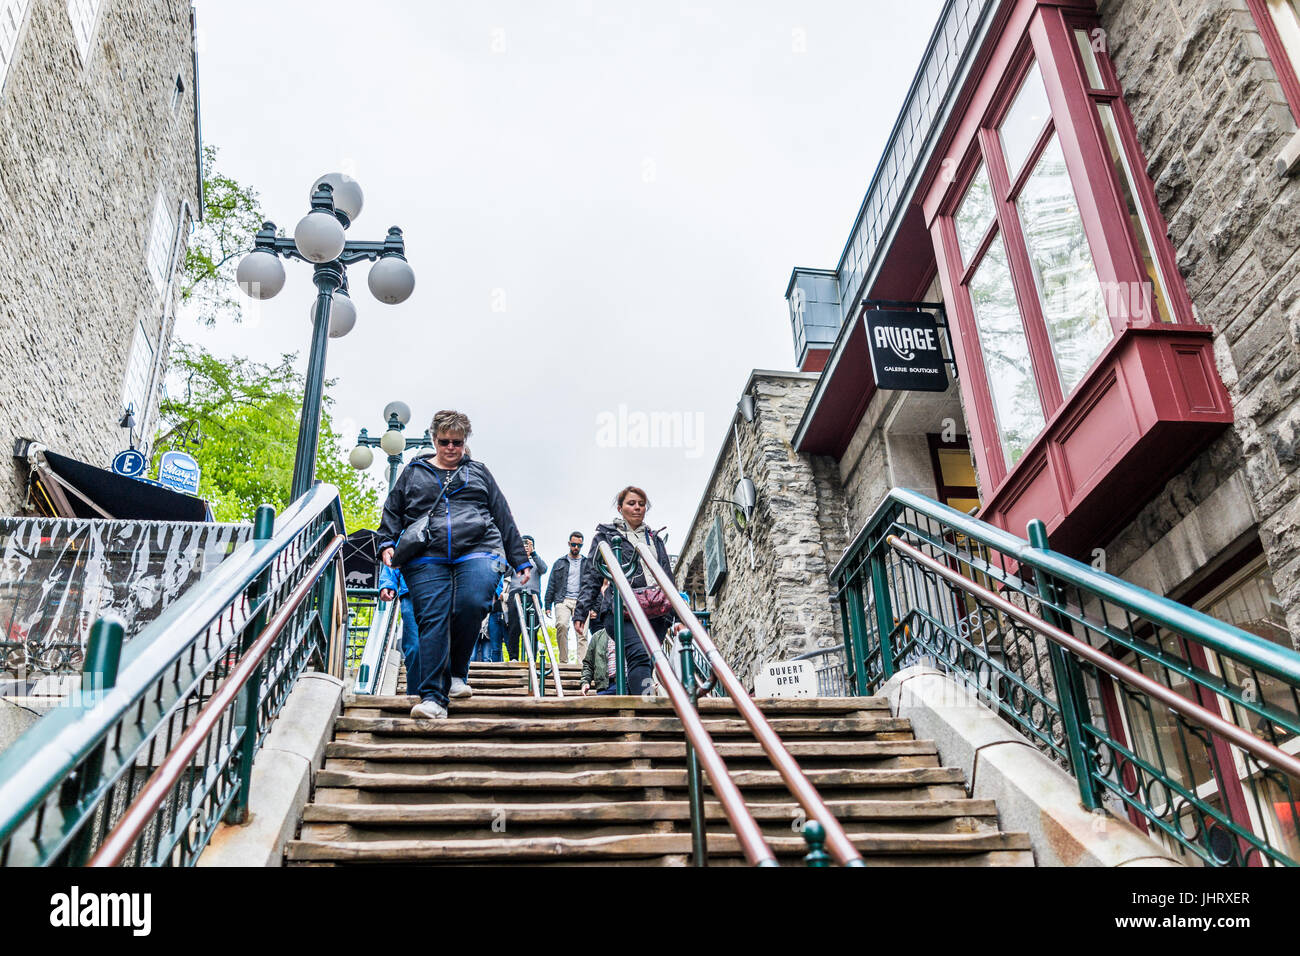 La città di Quebec, Canada - 30 Maggio 2017: persone passeggiando per le famose scale o gradini nella parte inferiore delle città vecchia strada chiamata Rue du Petit Champlain da ristoranti Foto Stock